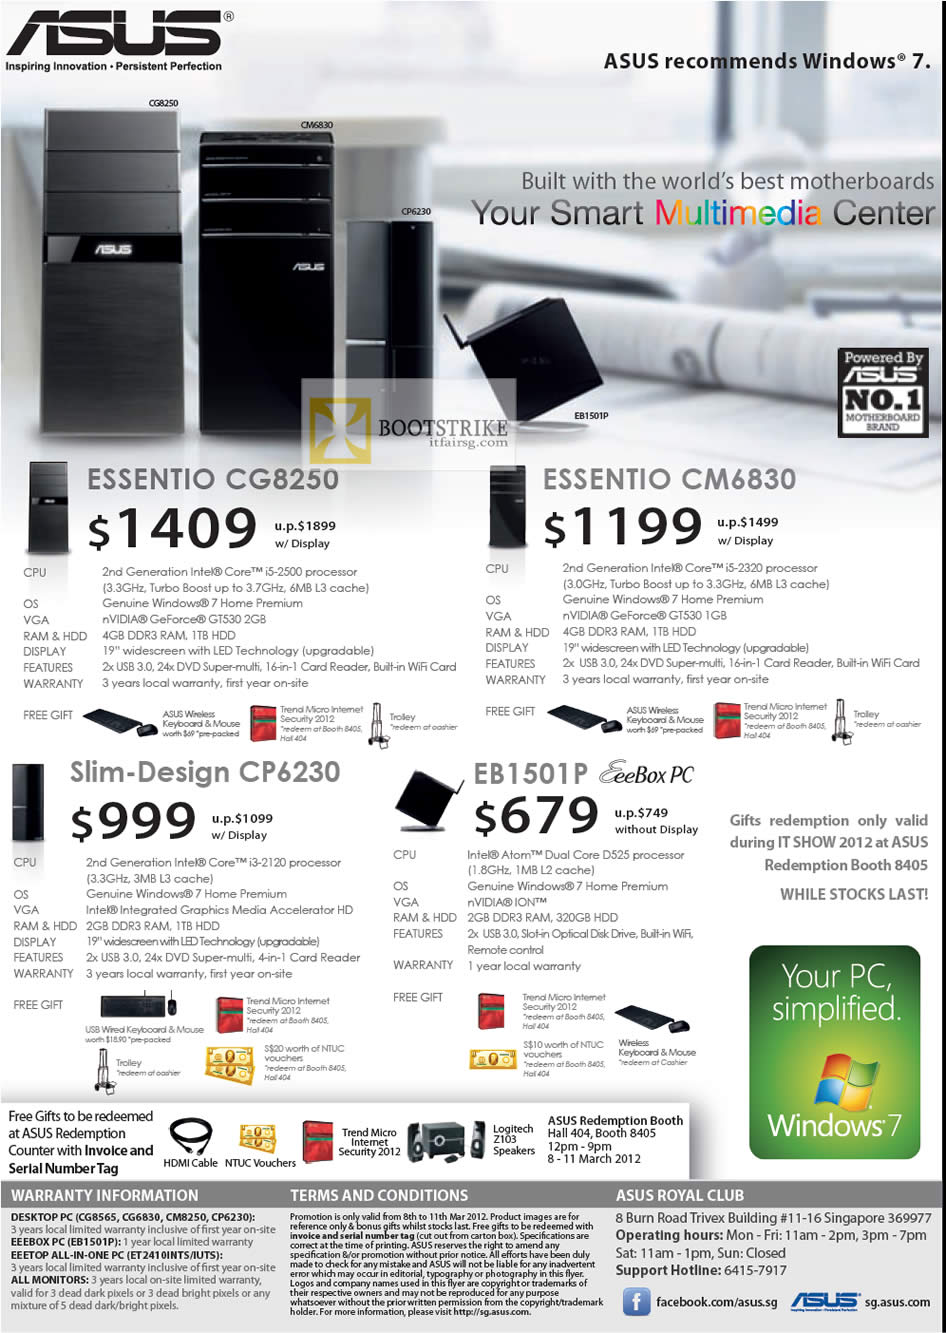 IT SHOW 2012 price list image brochure of ASUS Desktop PC Essentia CG8250, CM6830, Slim-Design CP6230, EeeBox PC EB1501P